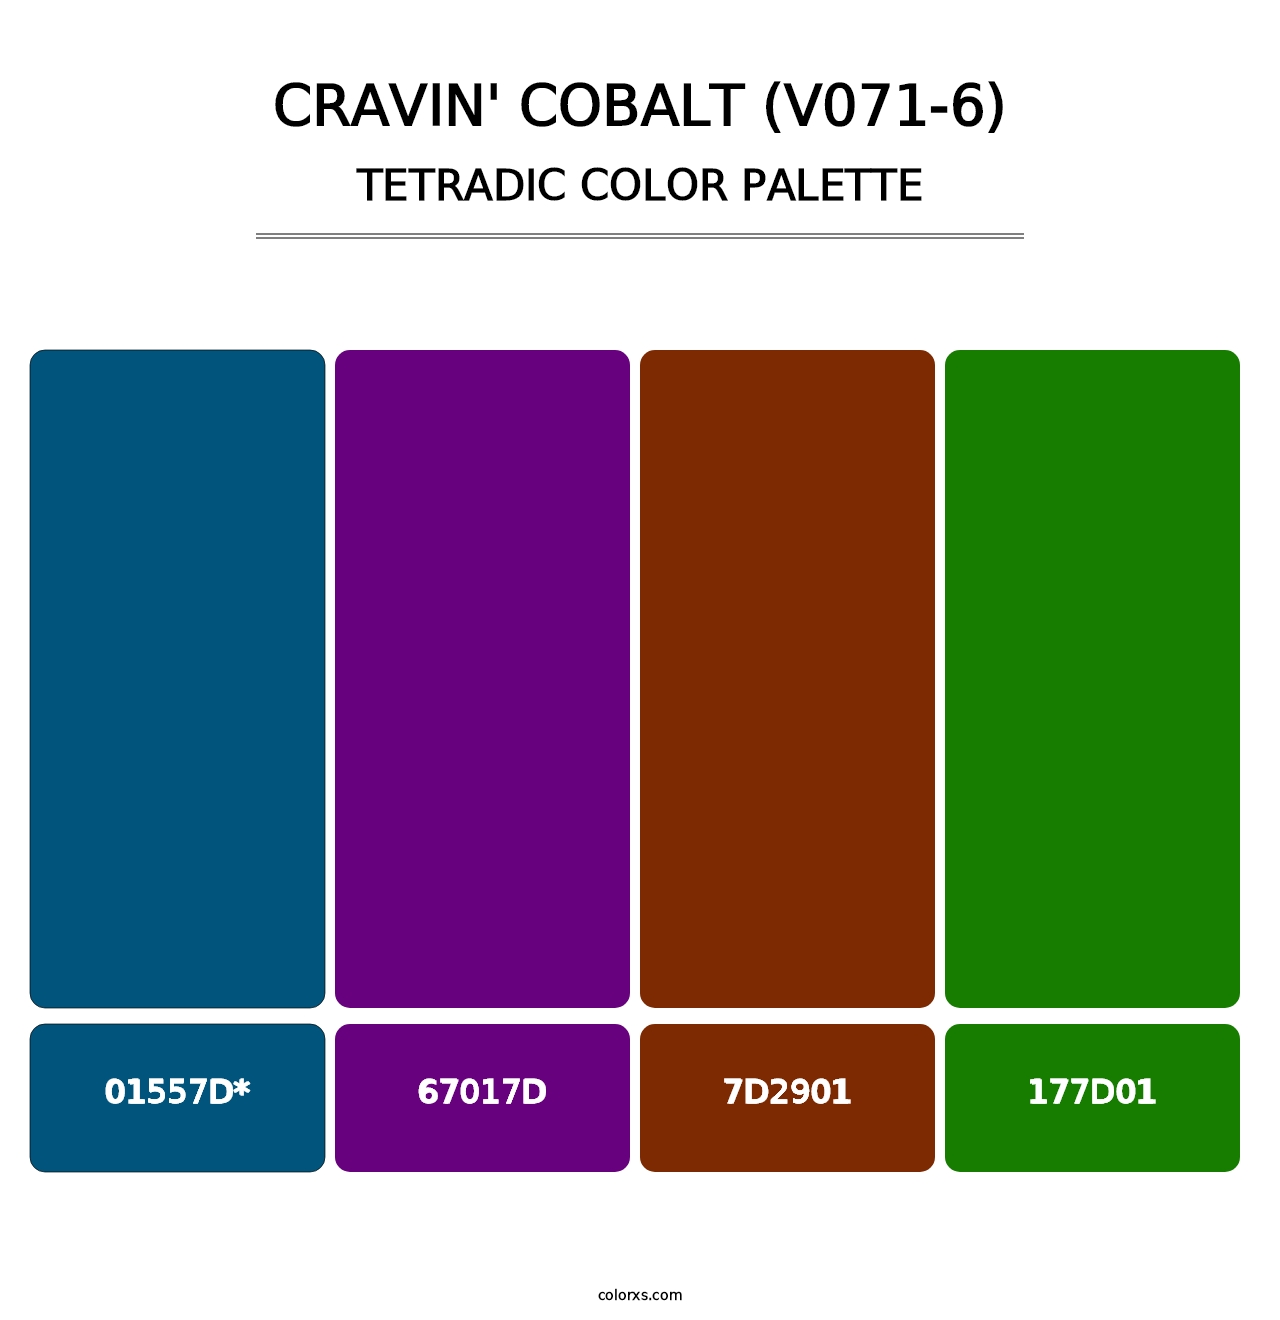 Cravin' Cobalt (V071-6) - Tetradic Color Palette